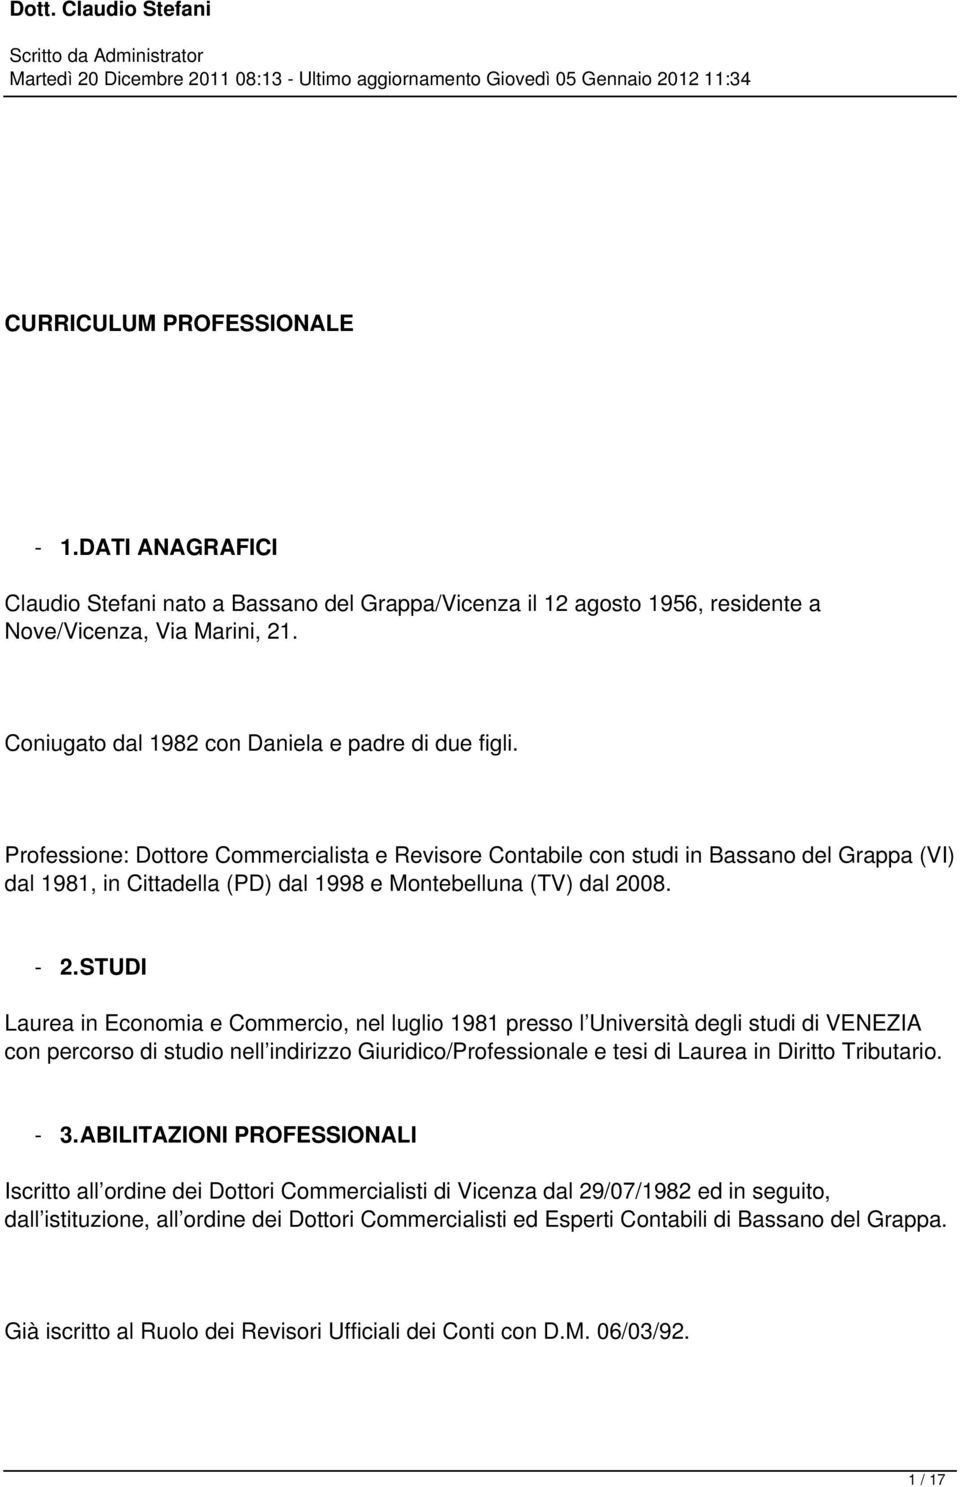 Professione: Dottore Commercialista e Revisore Contabile con studi in Bassano del Grappa (VI) dal 1981, in Cittadella (PD) dal 1998 e Montebelluna (TV) dal 2008. - 2.